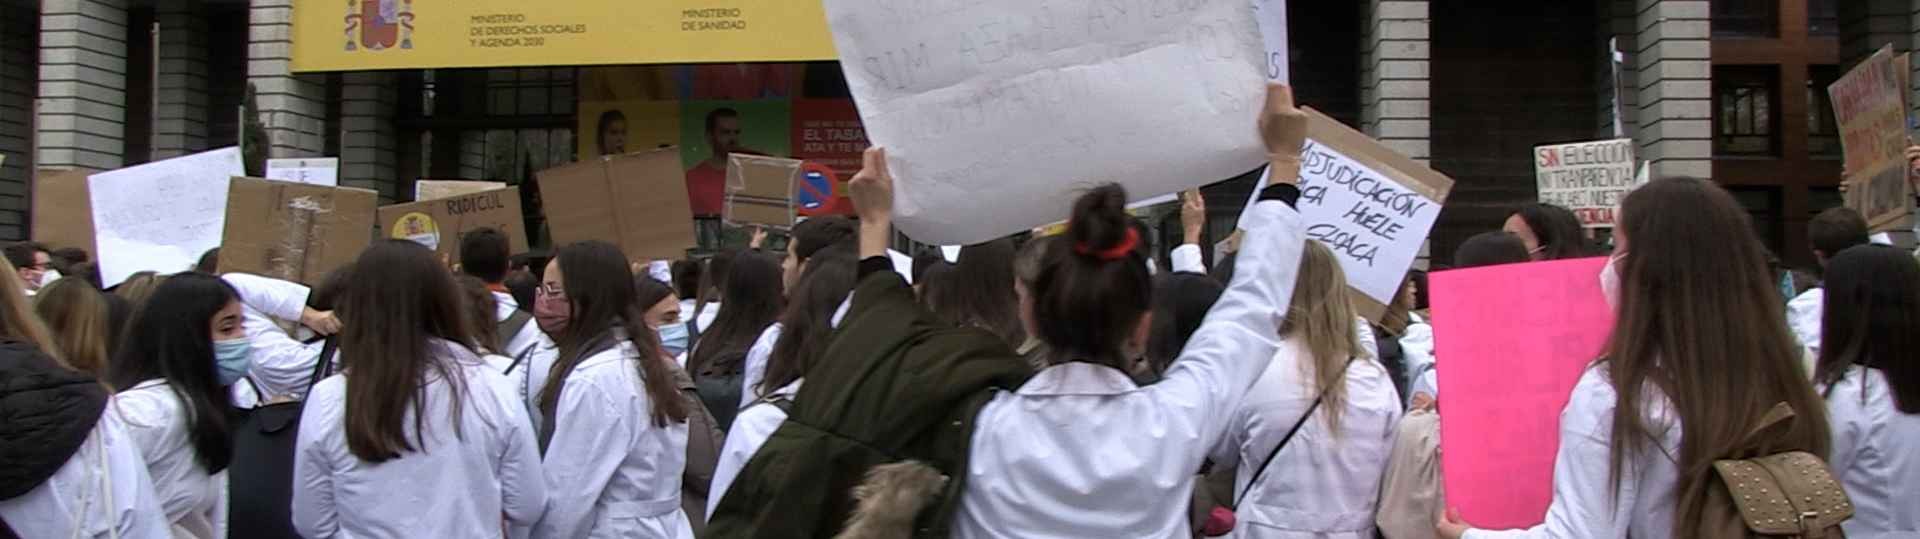 Miles de enfermeras se manifiestan en Madrid en defensa de la Sanidad